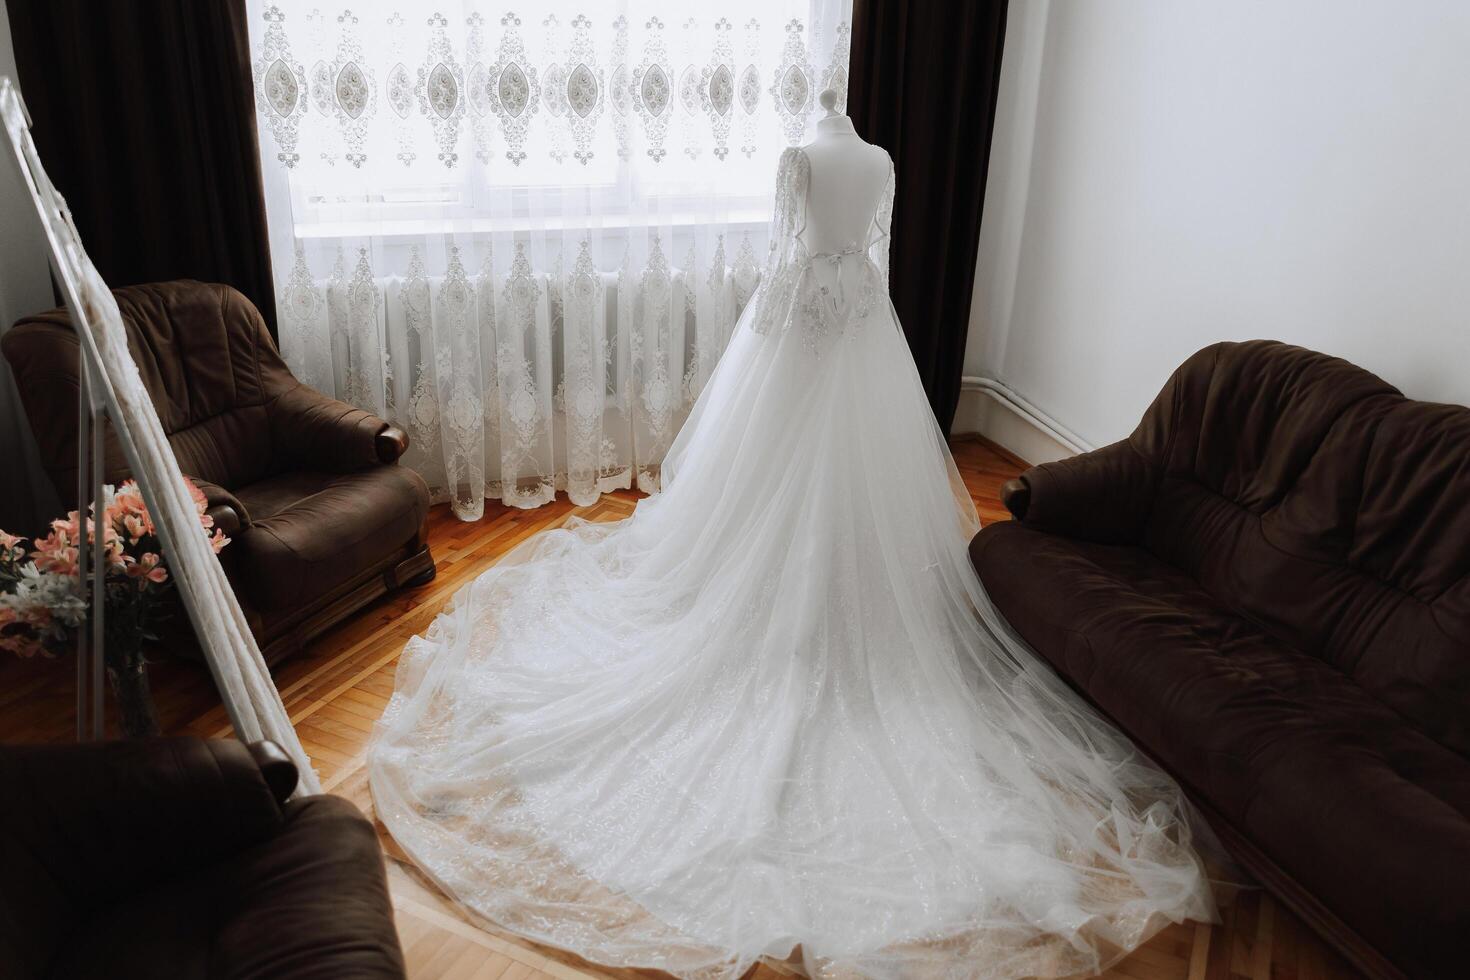 sovrum interiör med bröllop klänning beredd för de ceremoni. en skön frodig bröllop klänning på en mannekäng i en hotell rum. foto